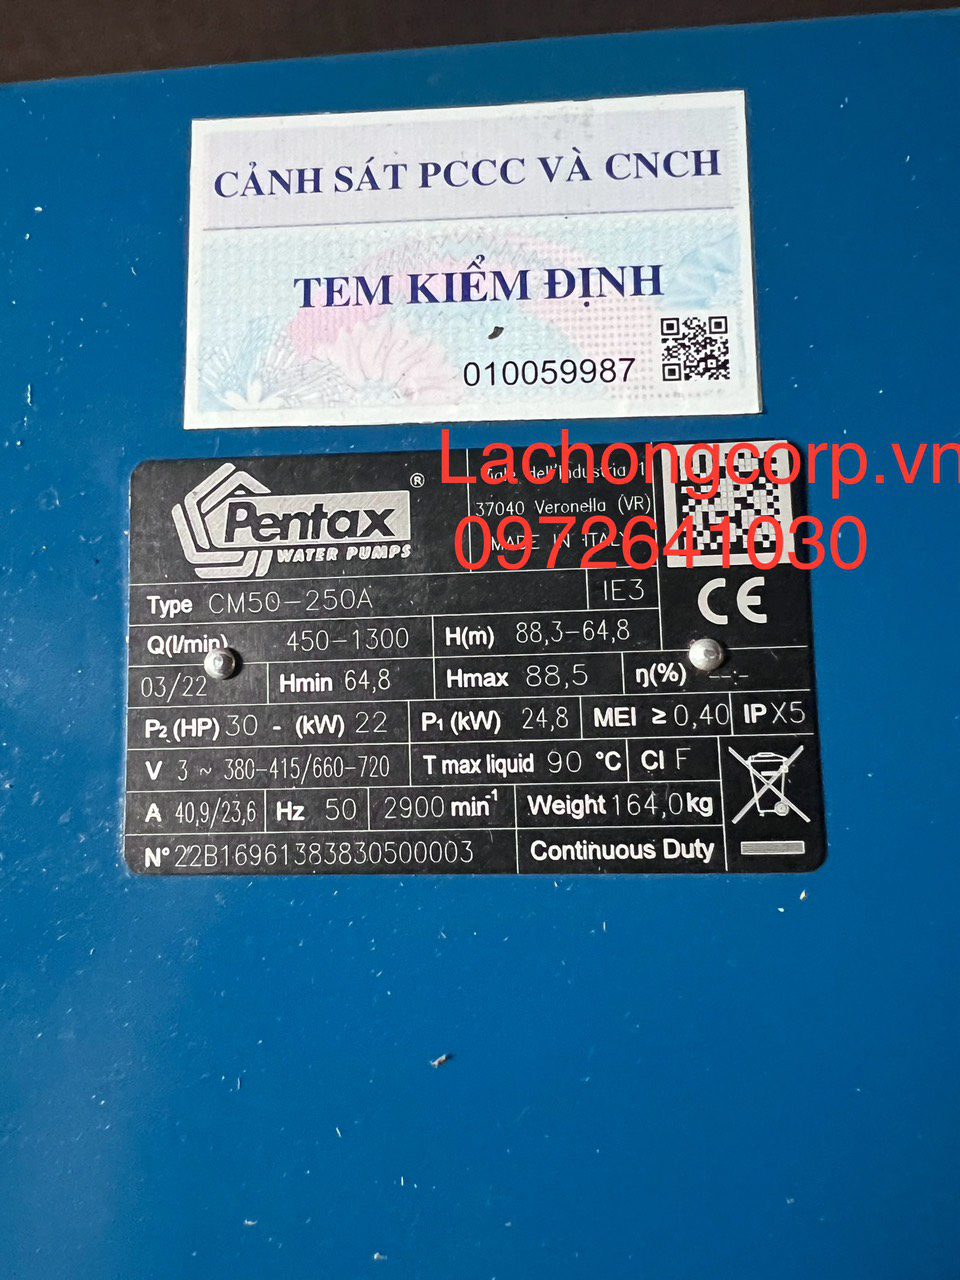 Máy bơm Pentax CM50-250A đã được kiểm định PCCC